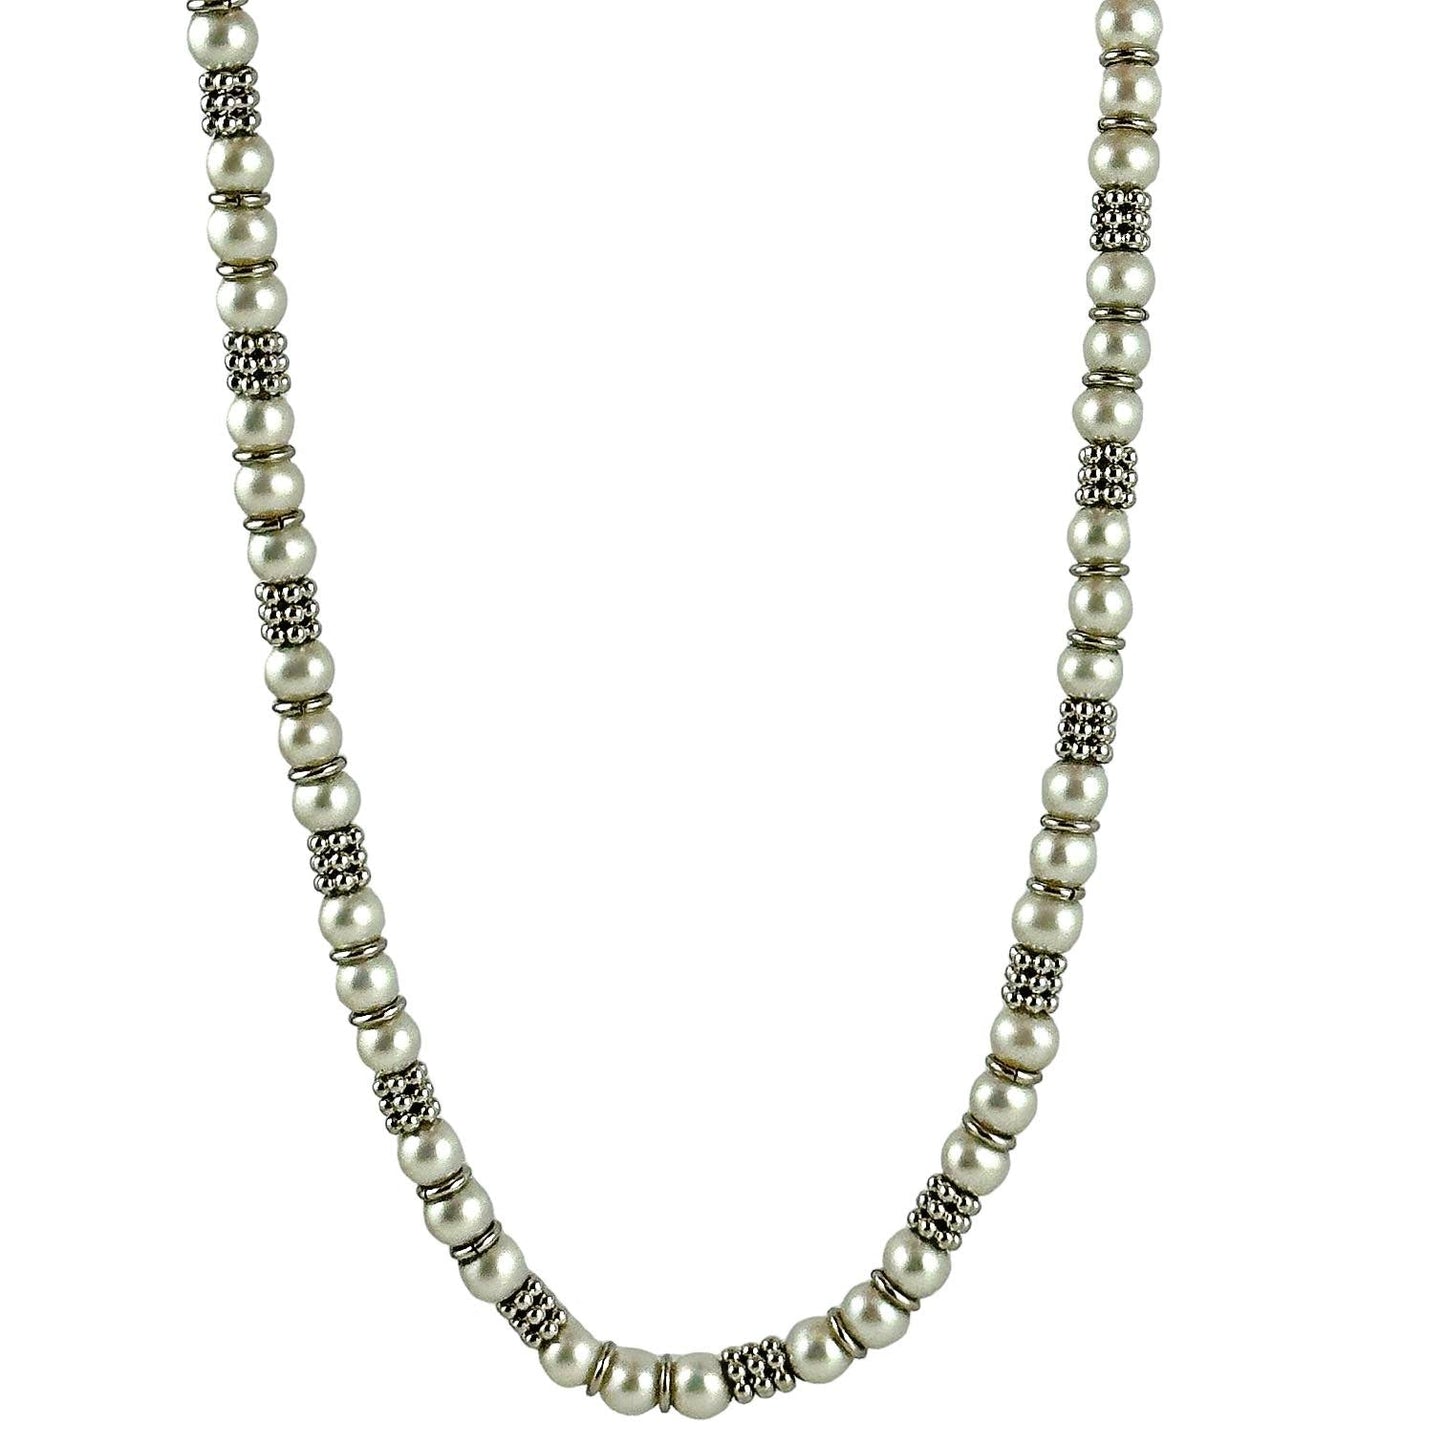 Collana da donna in oro con perle - Simmi Gioielli - Simmi Gioiellerie - 